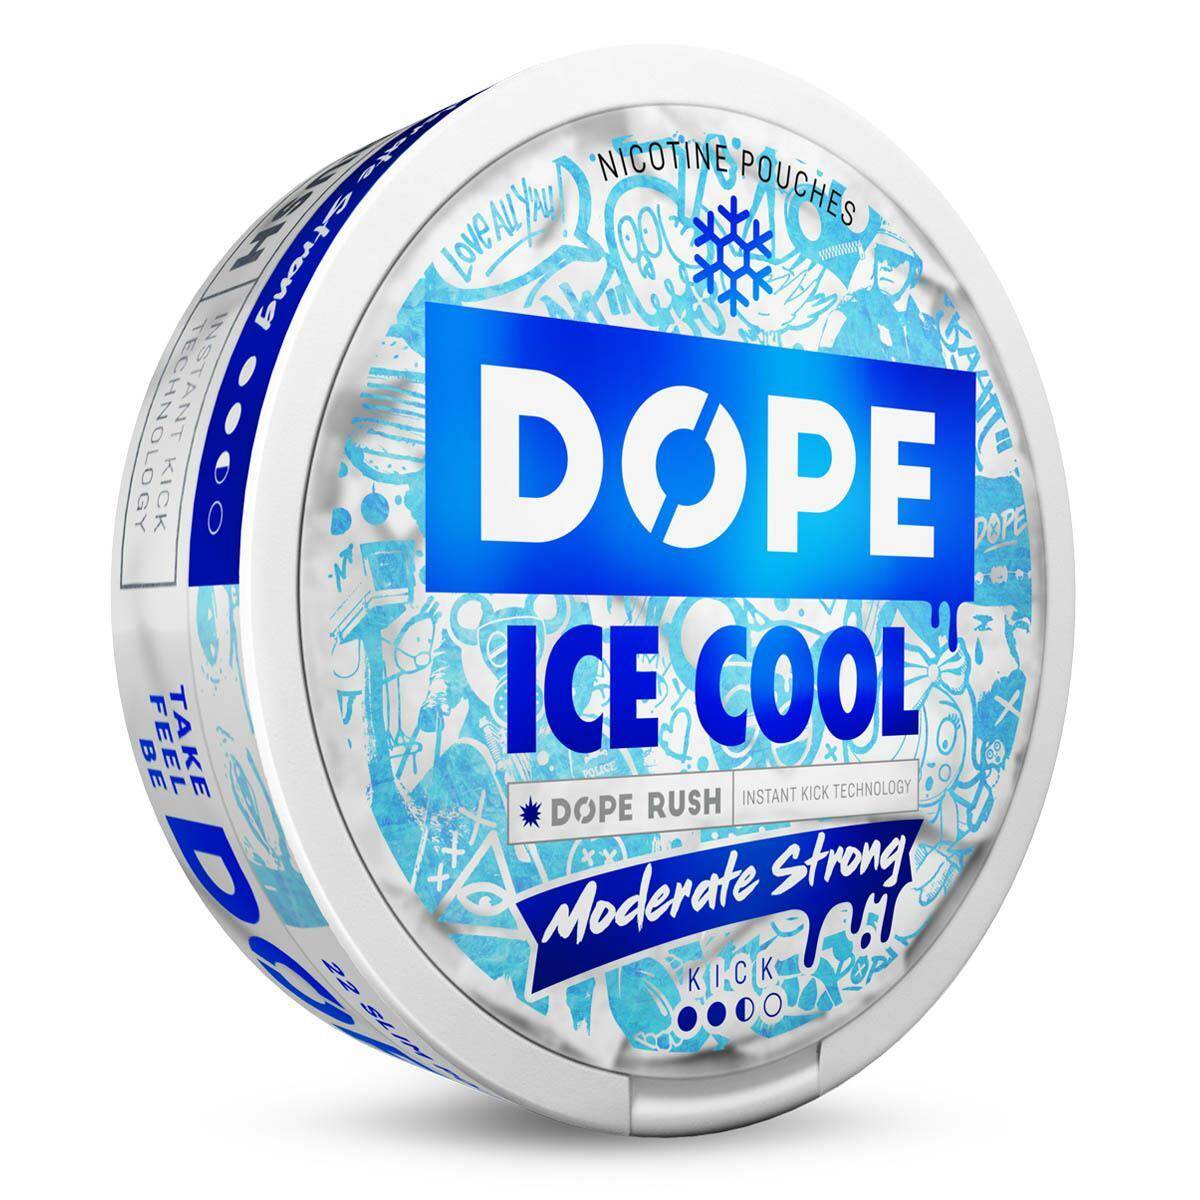 SNUS - Saszetki nikotynowe DOPE - Ice Cool 16mg/g (Zdjęcie 3)